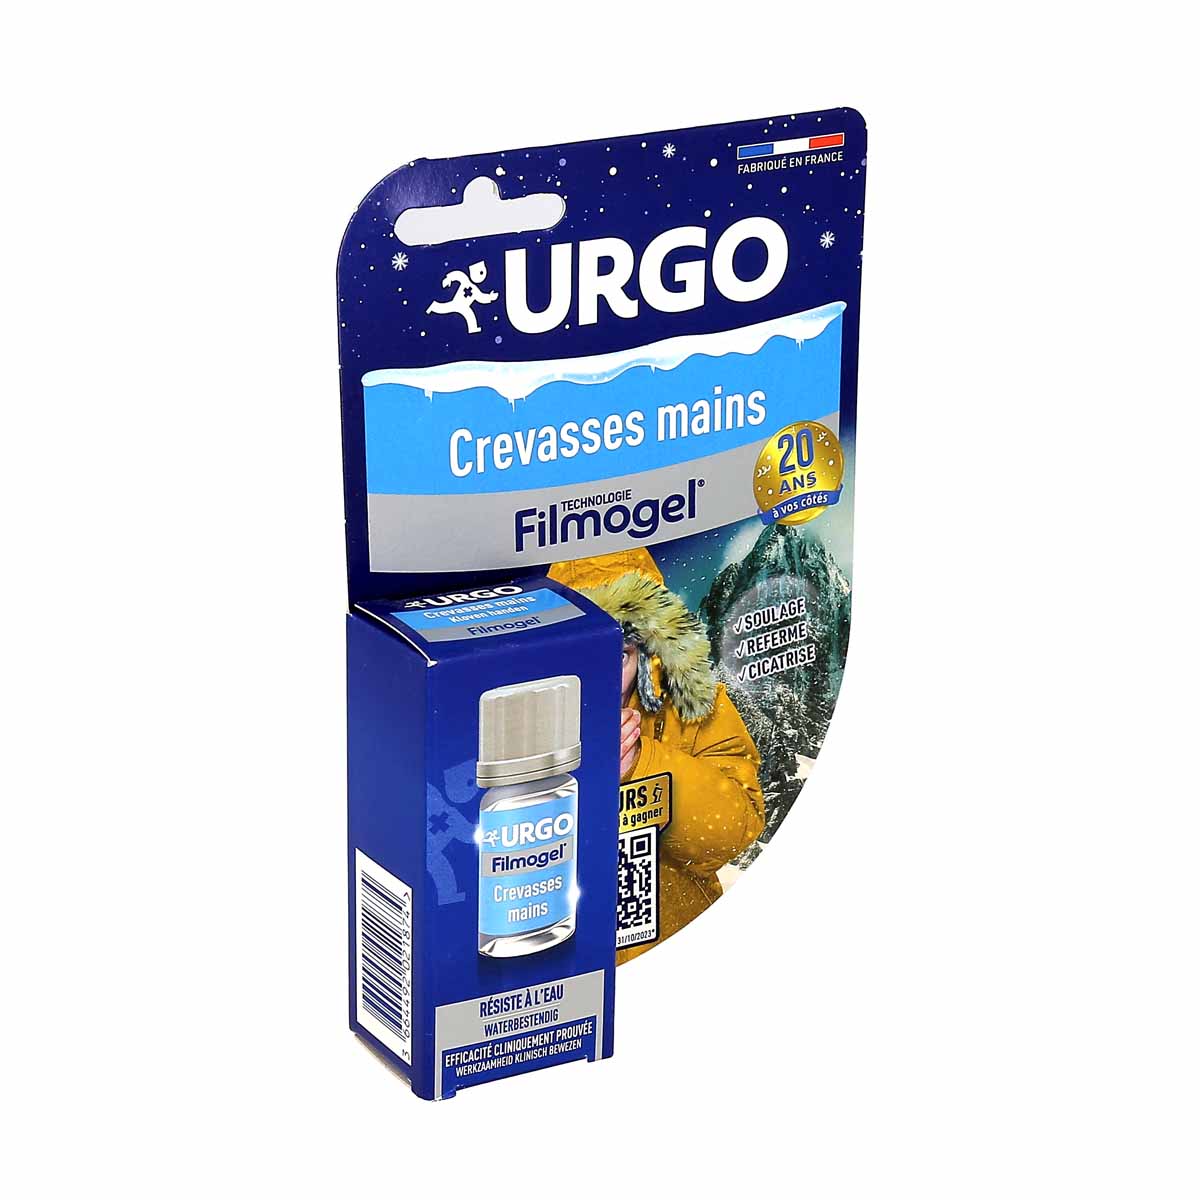 Urgo Filmogel Crevasses Mains 3,25ml